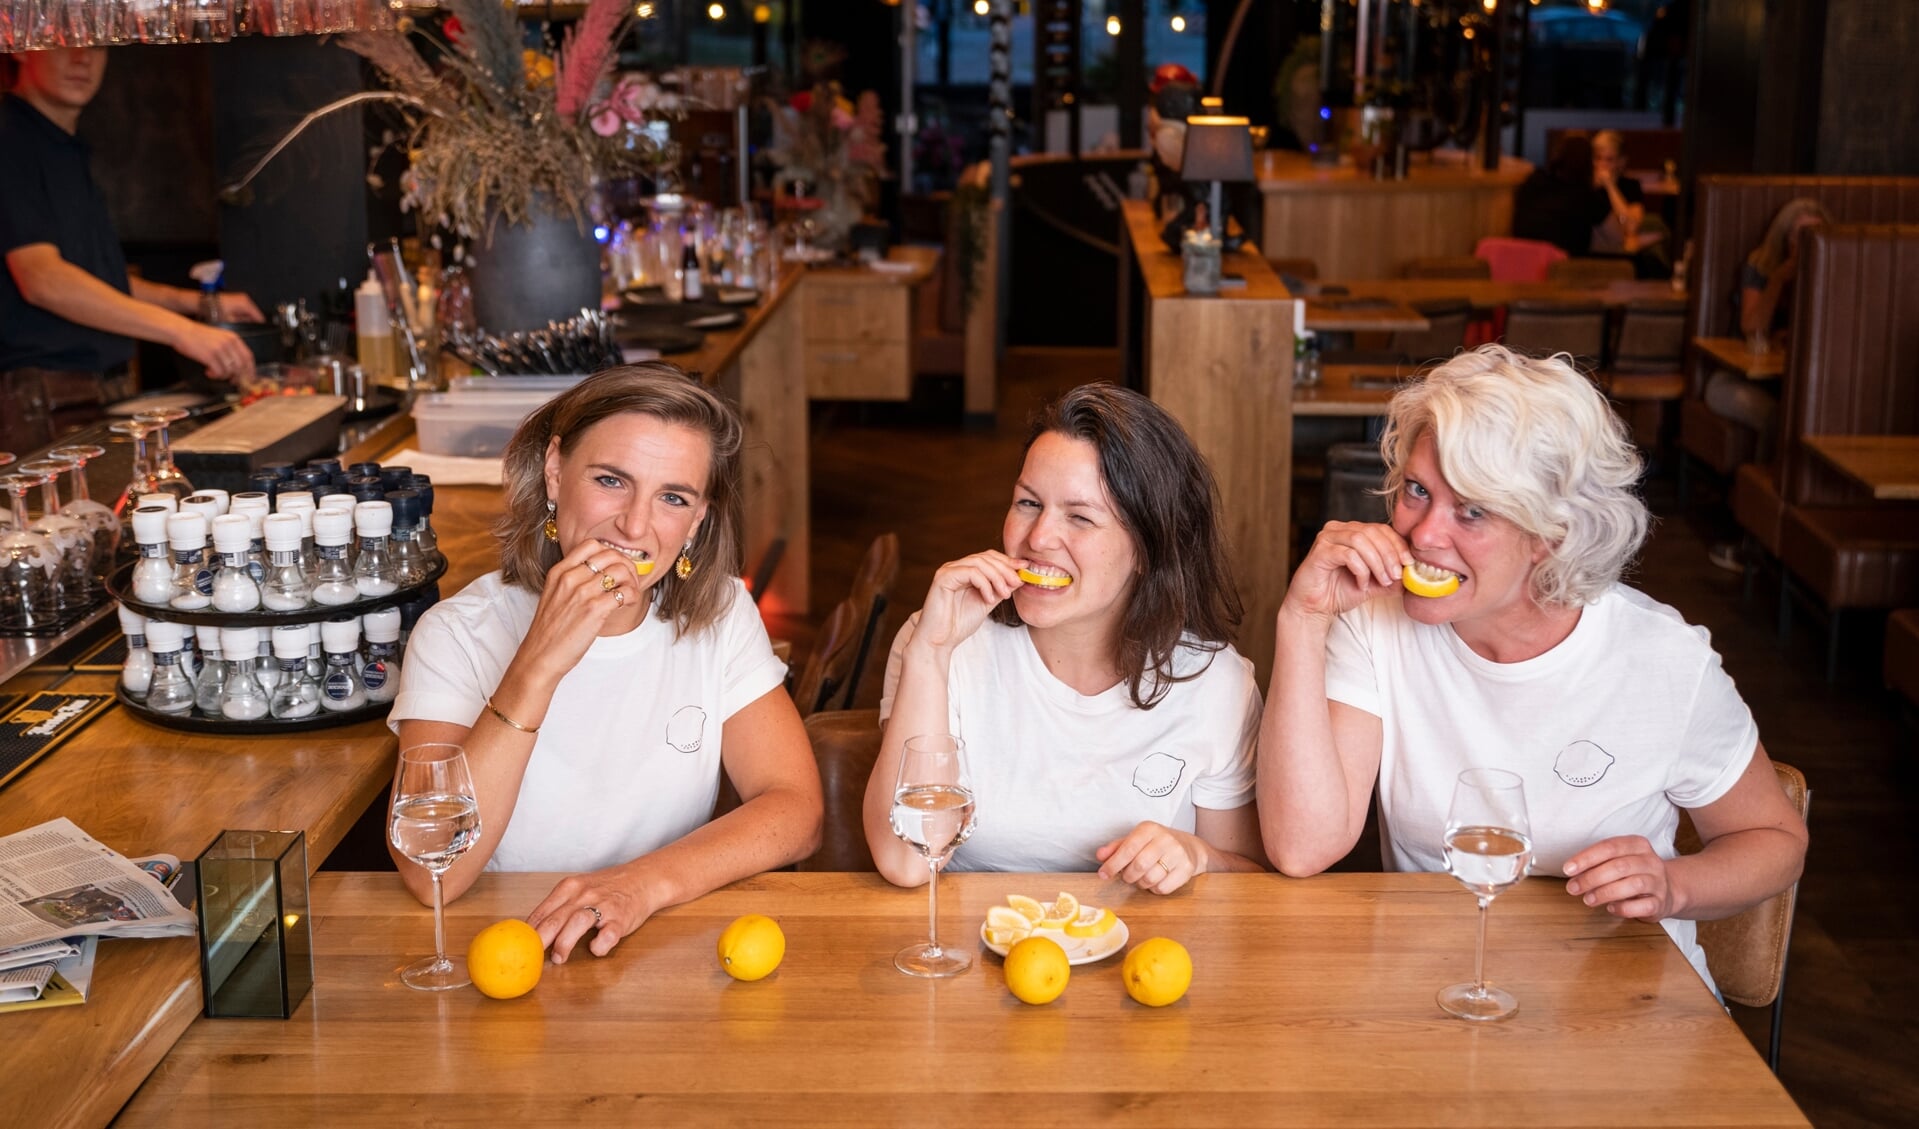 De citroen is blikvanger bij de landelijke campagne 'Zuur hè?' van de Ladies' Circles in de strijd tegen de ziekte van Huntington.